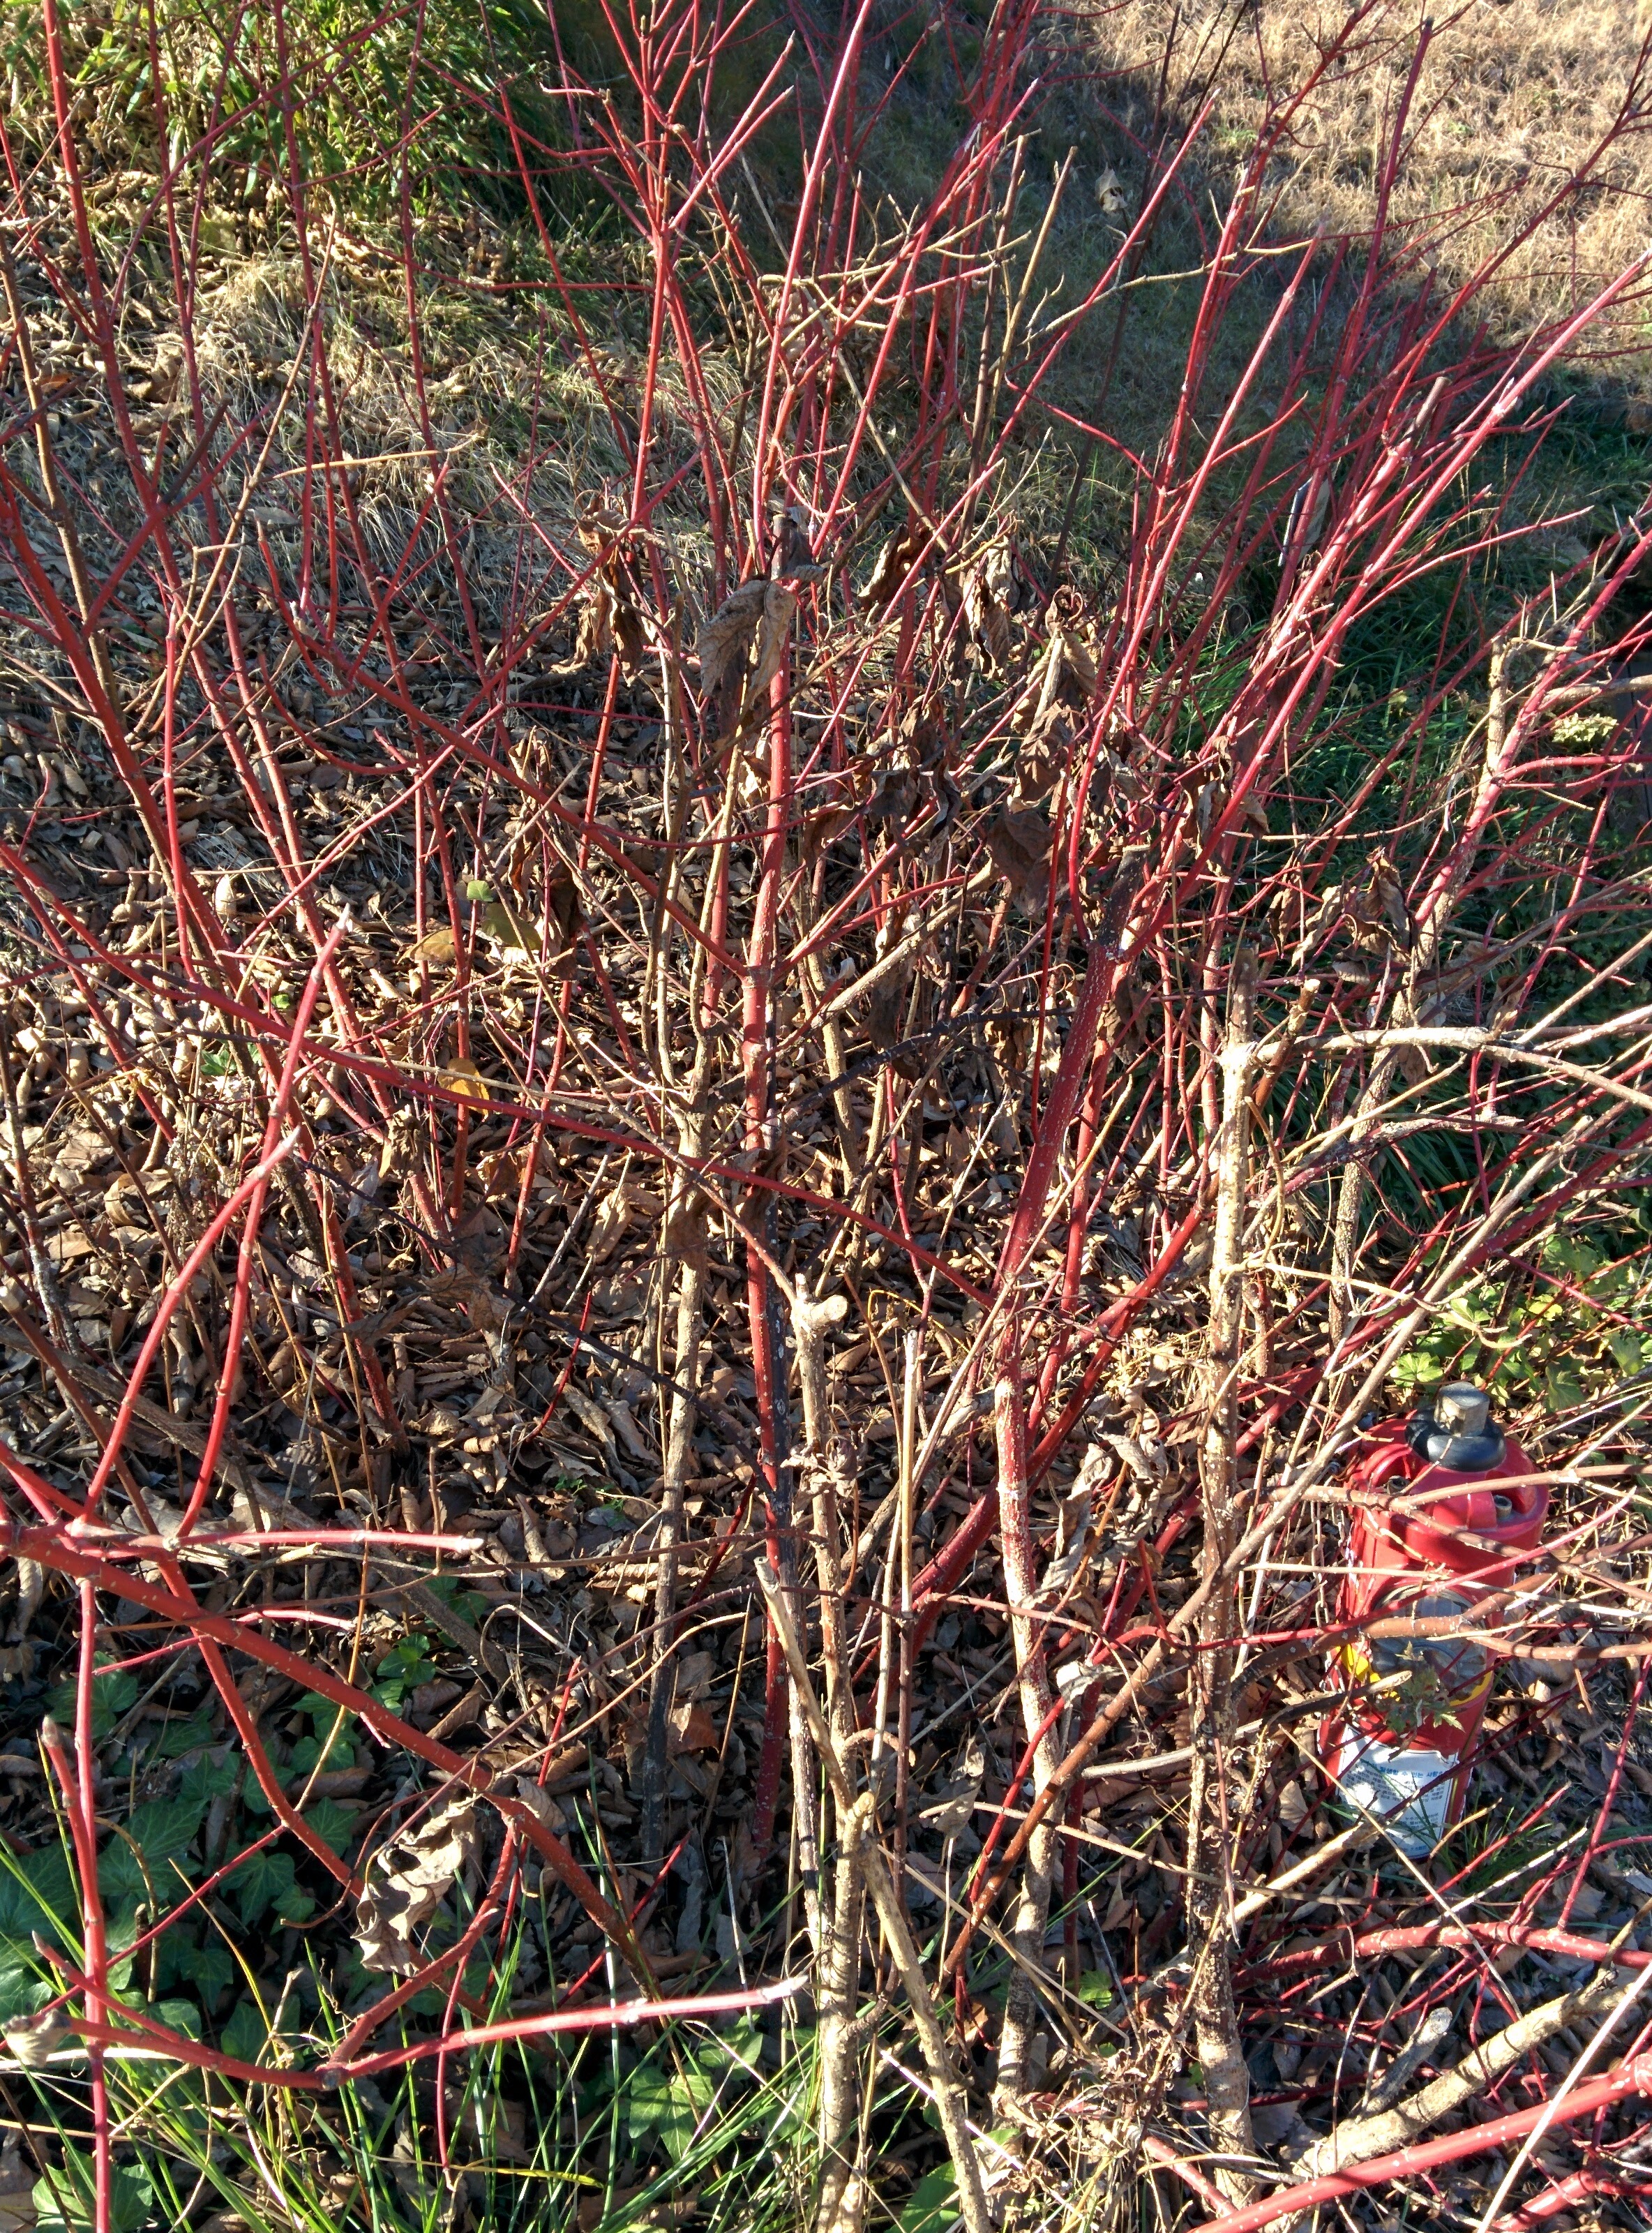 IMG_20151228_140751.jpg 붉은색 줄기가 특이한 겨울의 흰말채나무